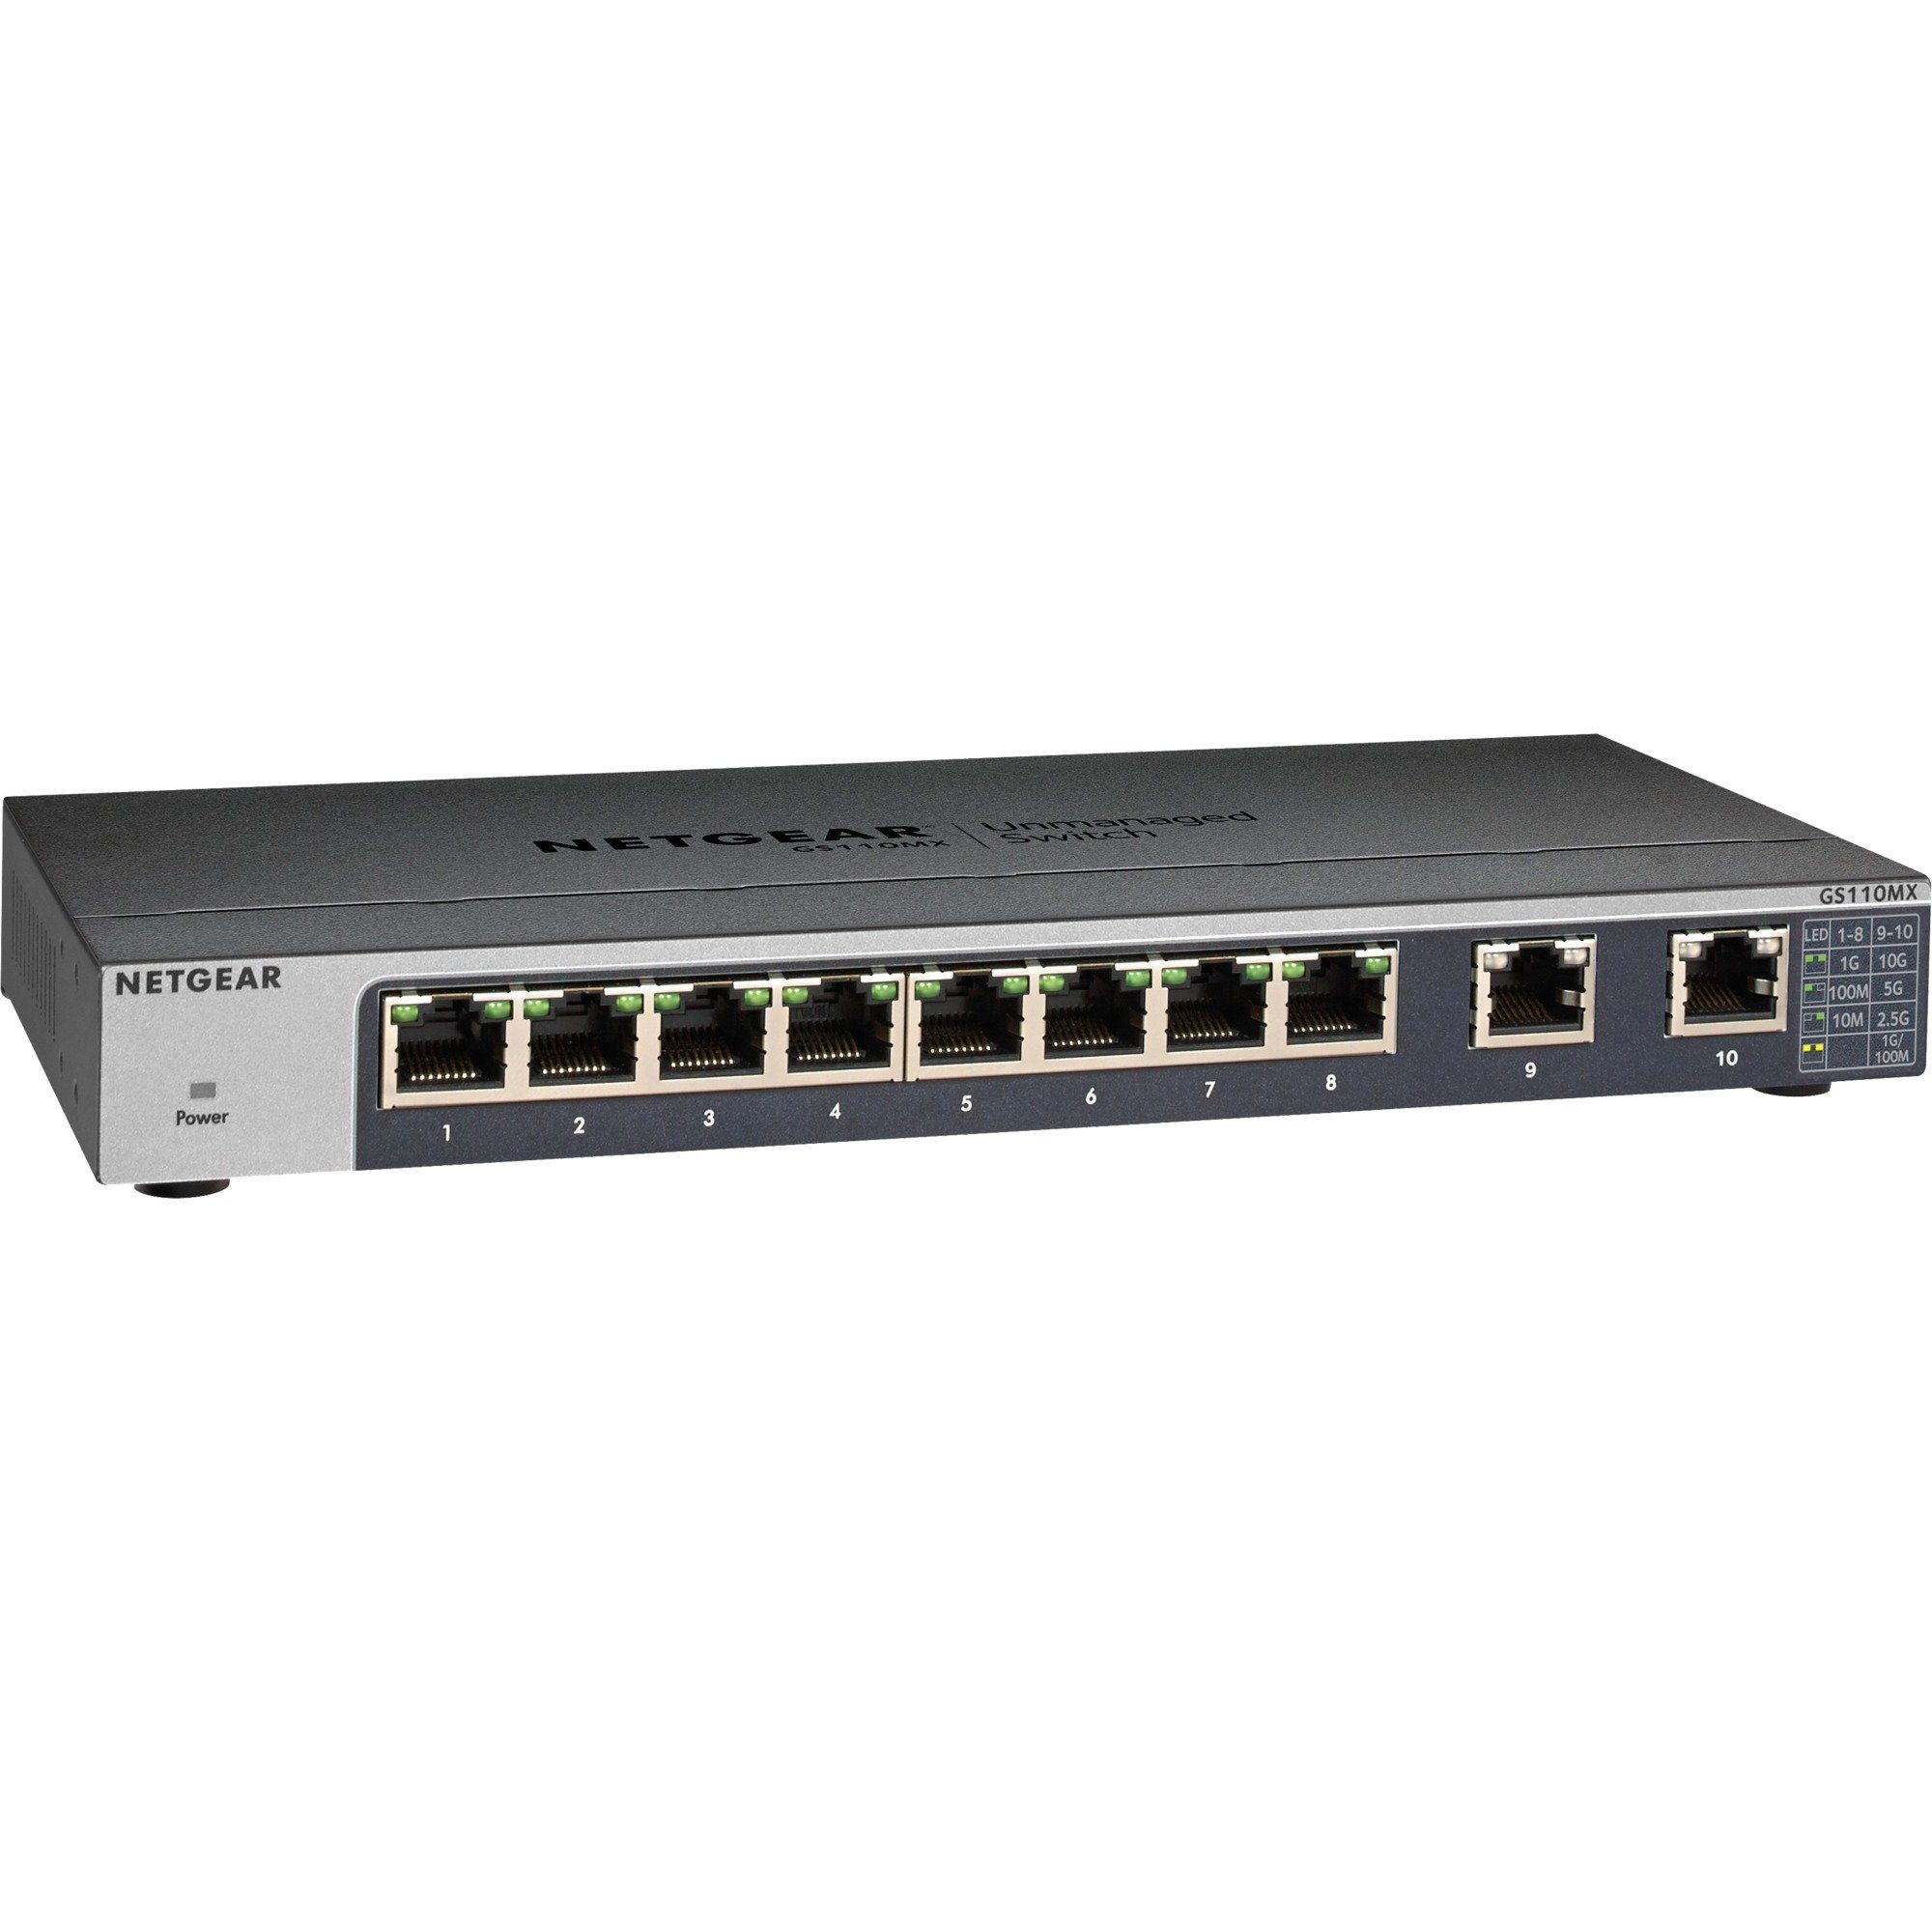 NETGEAR Netgear GS110MX, Switch Netzwerk-Switch, 2 x 100/1000/2.5G/5G/10G  RJ-45 Uplink